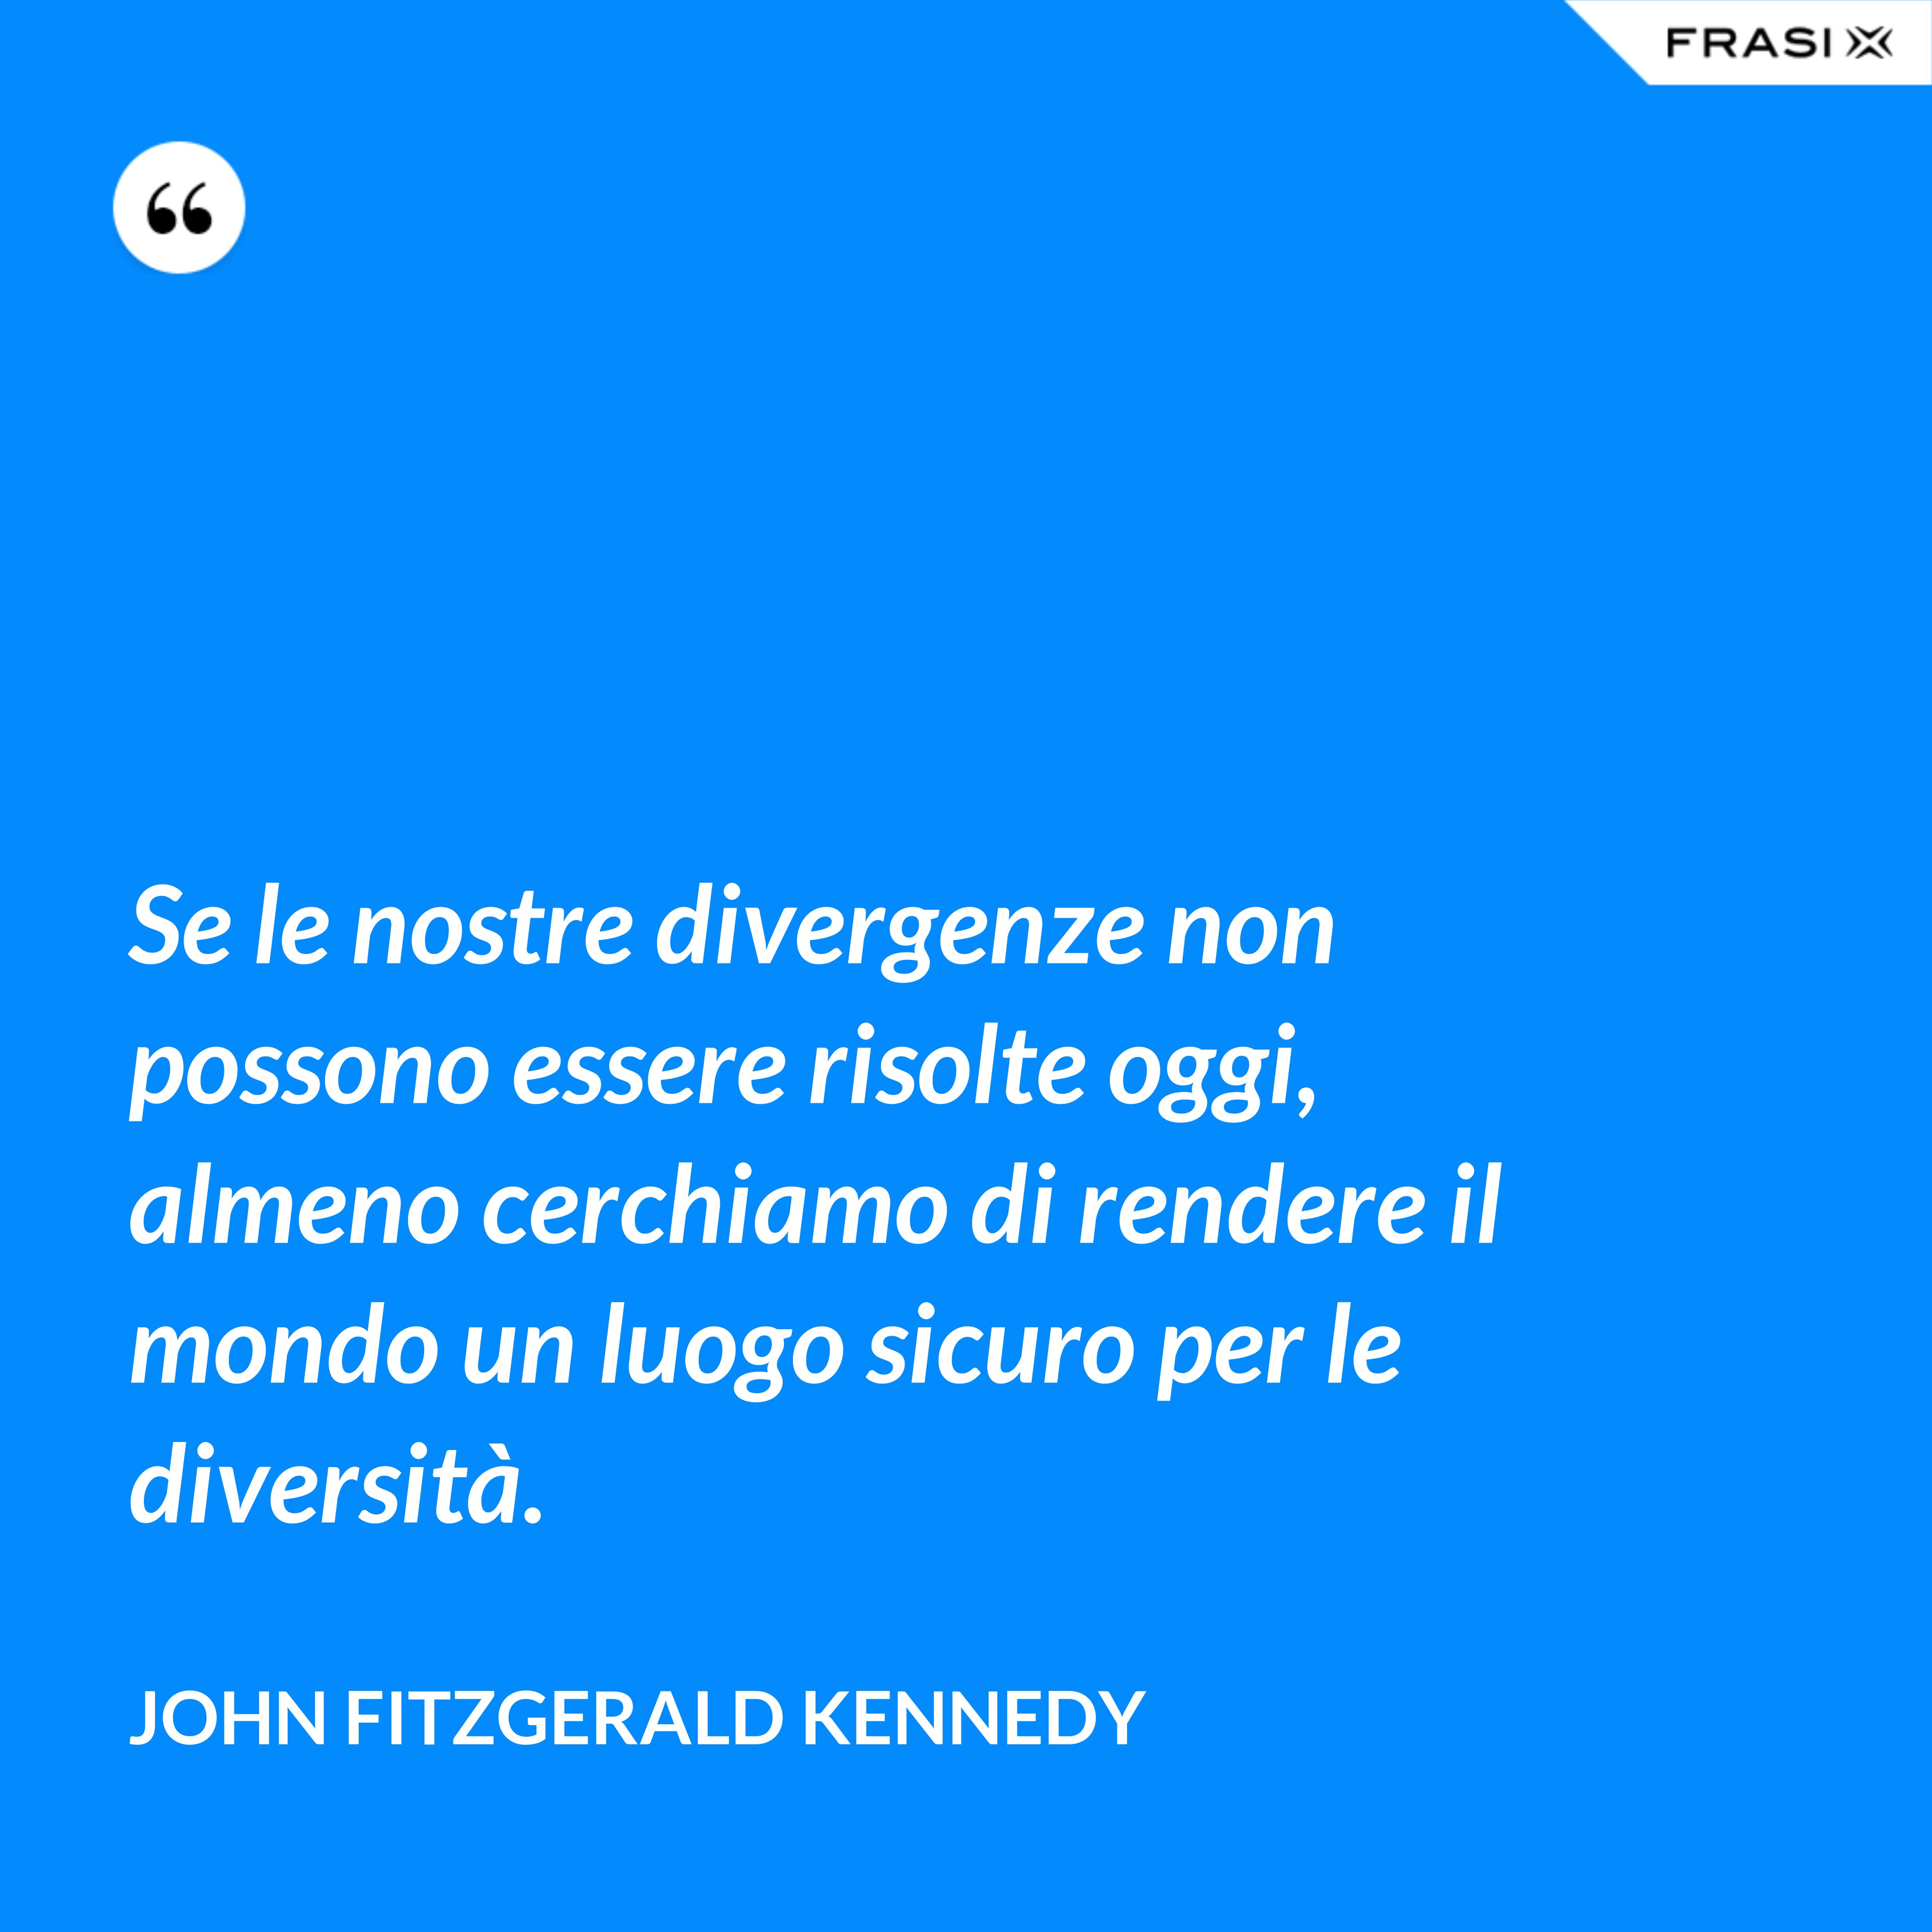 Se le nostre divergenze non possono essere risolte oggi, almeno cerchiamo di rendere il mondo un luogo sicuro per le diversità. - John Fitzgerald Kennedy